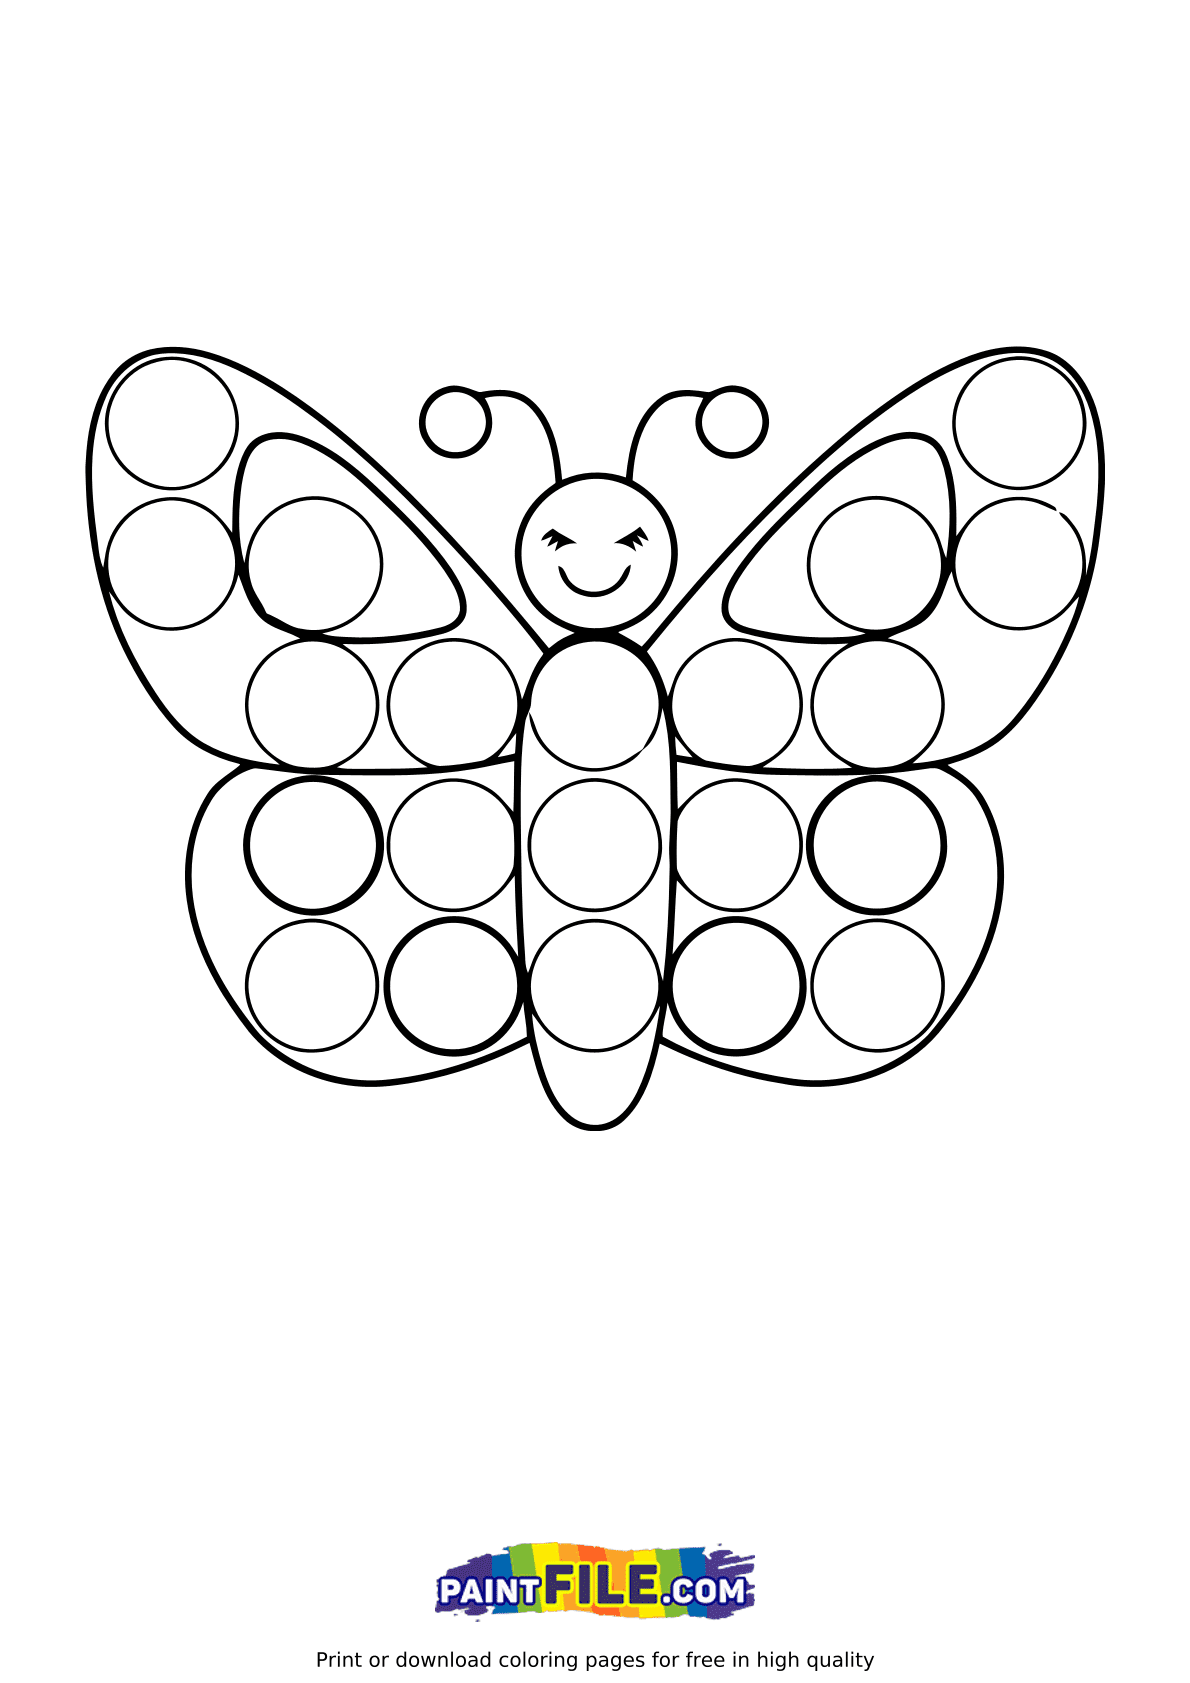 Бабочки для детей 2 3 лет